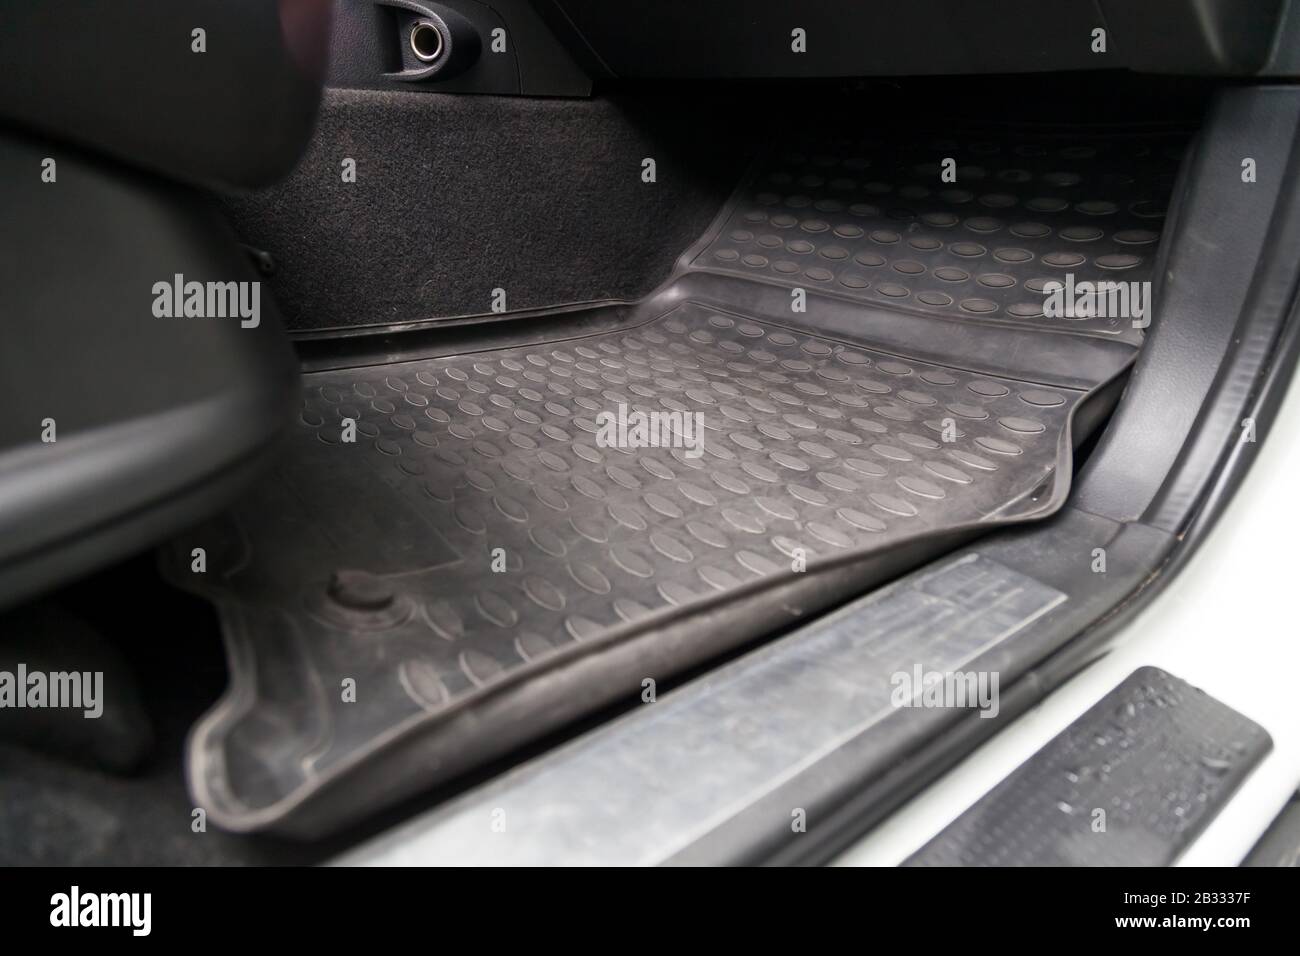 Schmutzige auto-fußmatten aus schwarzem gummi unter dem beifahrersitz in  der werkstatt für die fahrzeugaufbereitung vor der chemischen reinigung.  auto-service-industrie. innenraum einer limousine